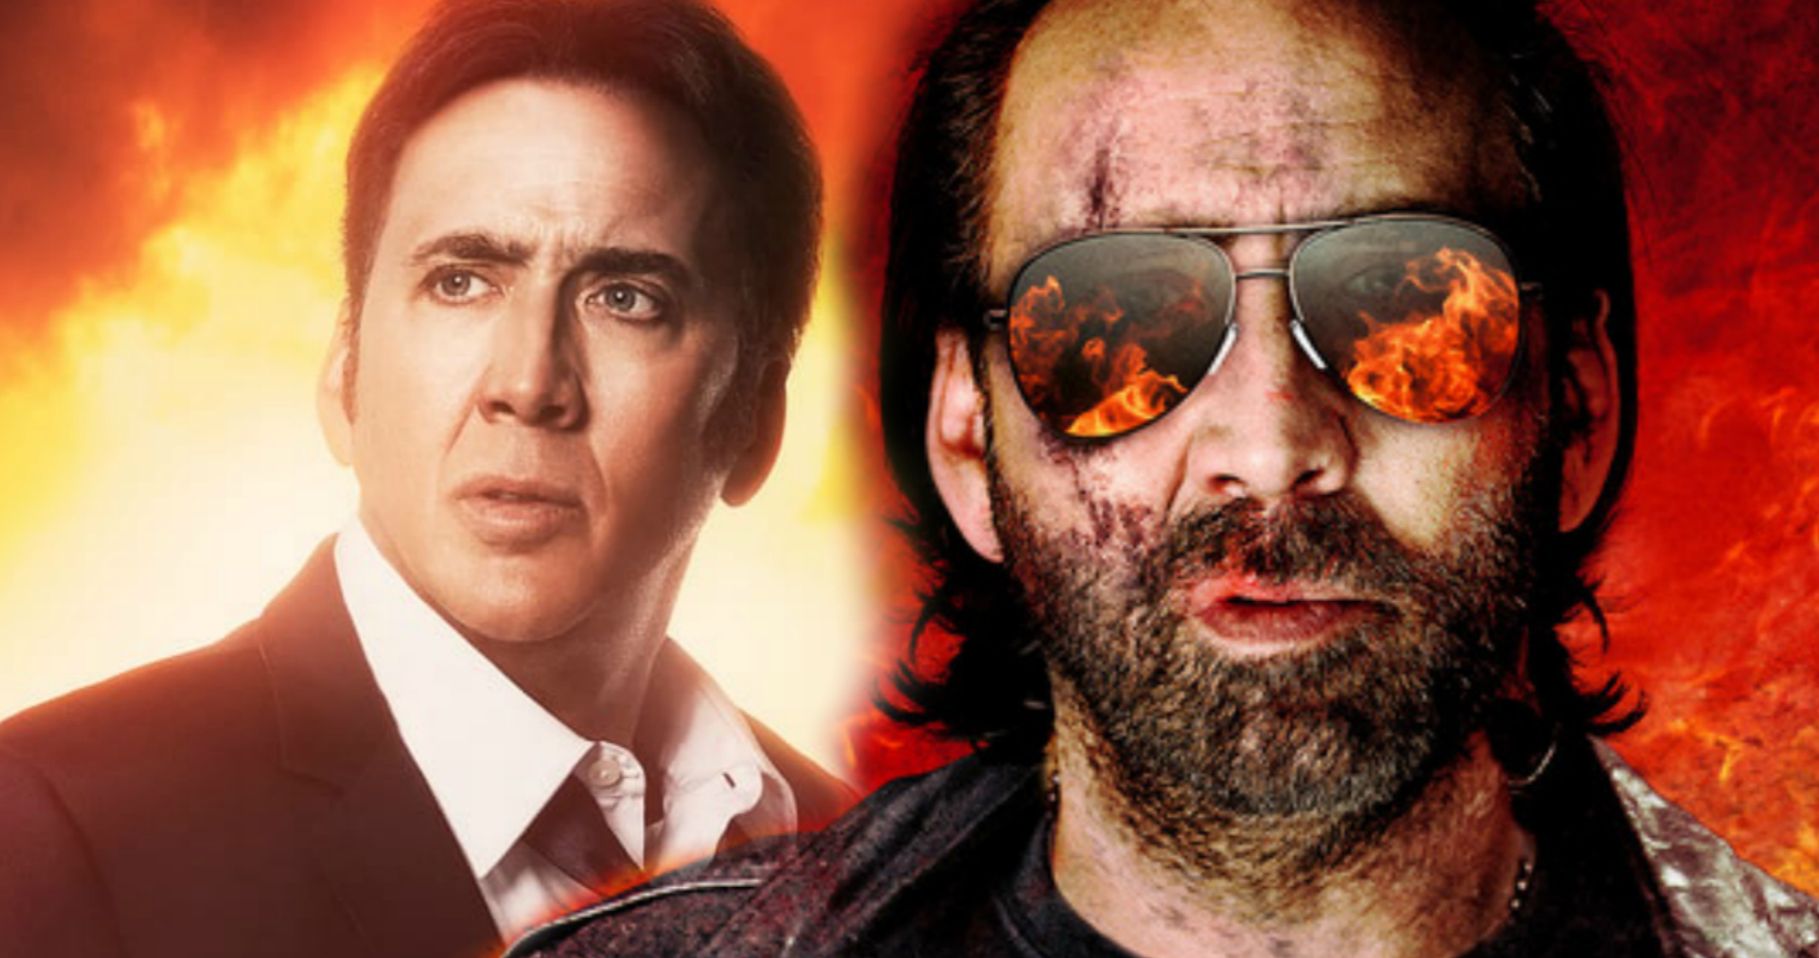 Nicolas Cage Will Play Nicolas Cage in Tarantino-Inspired Meta Movie